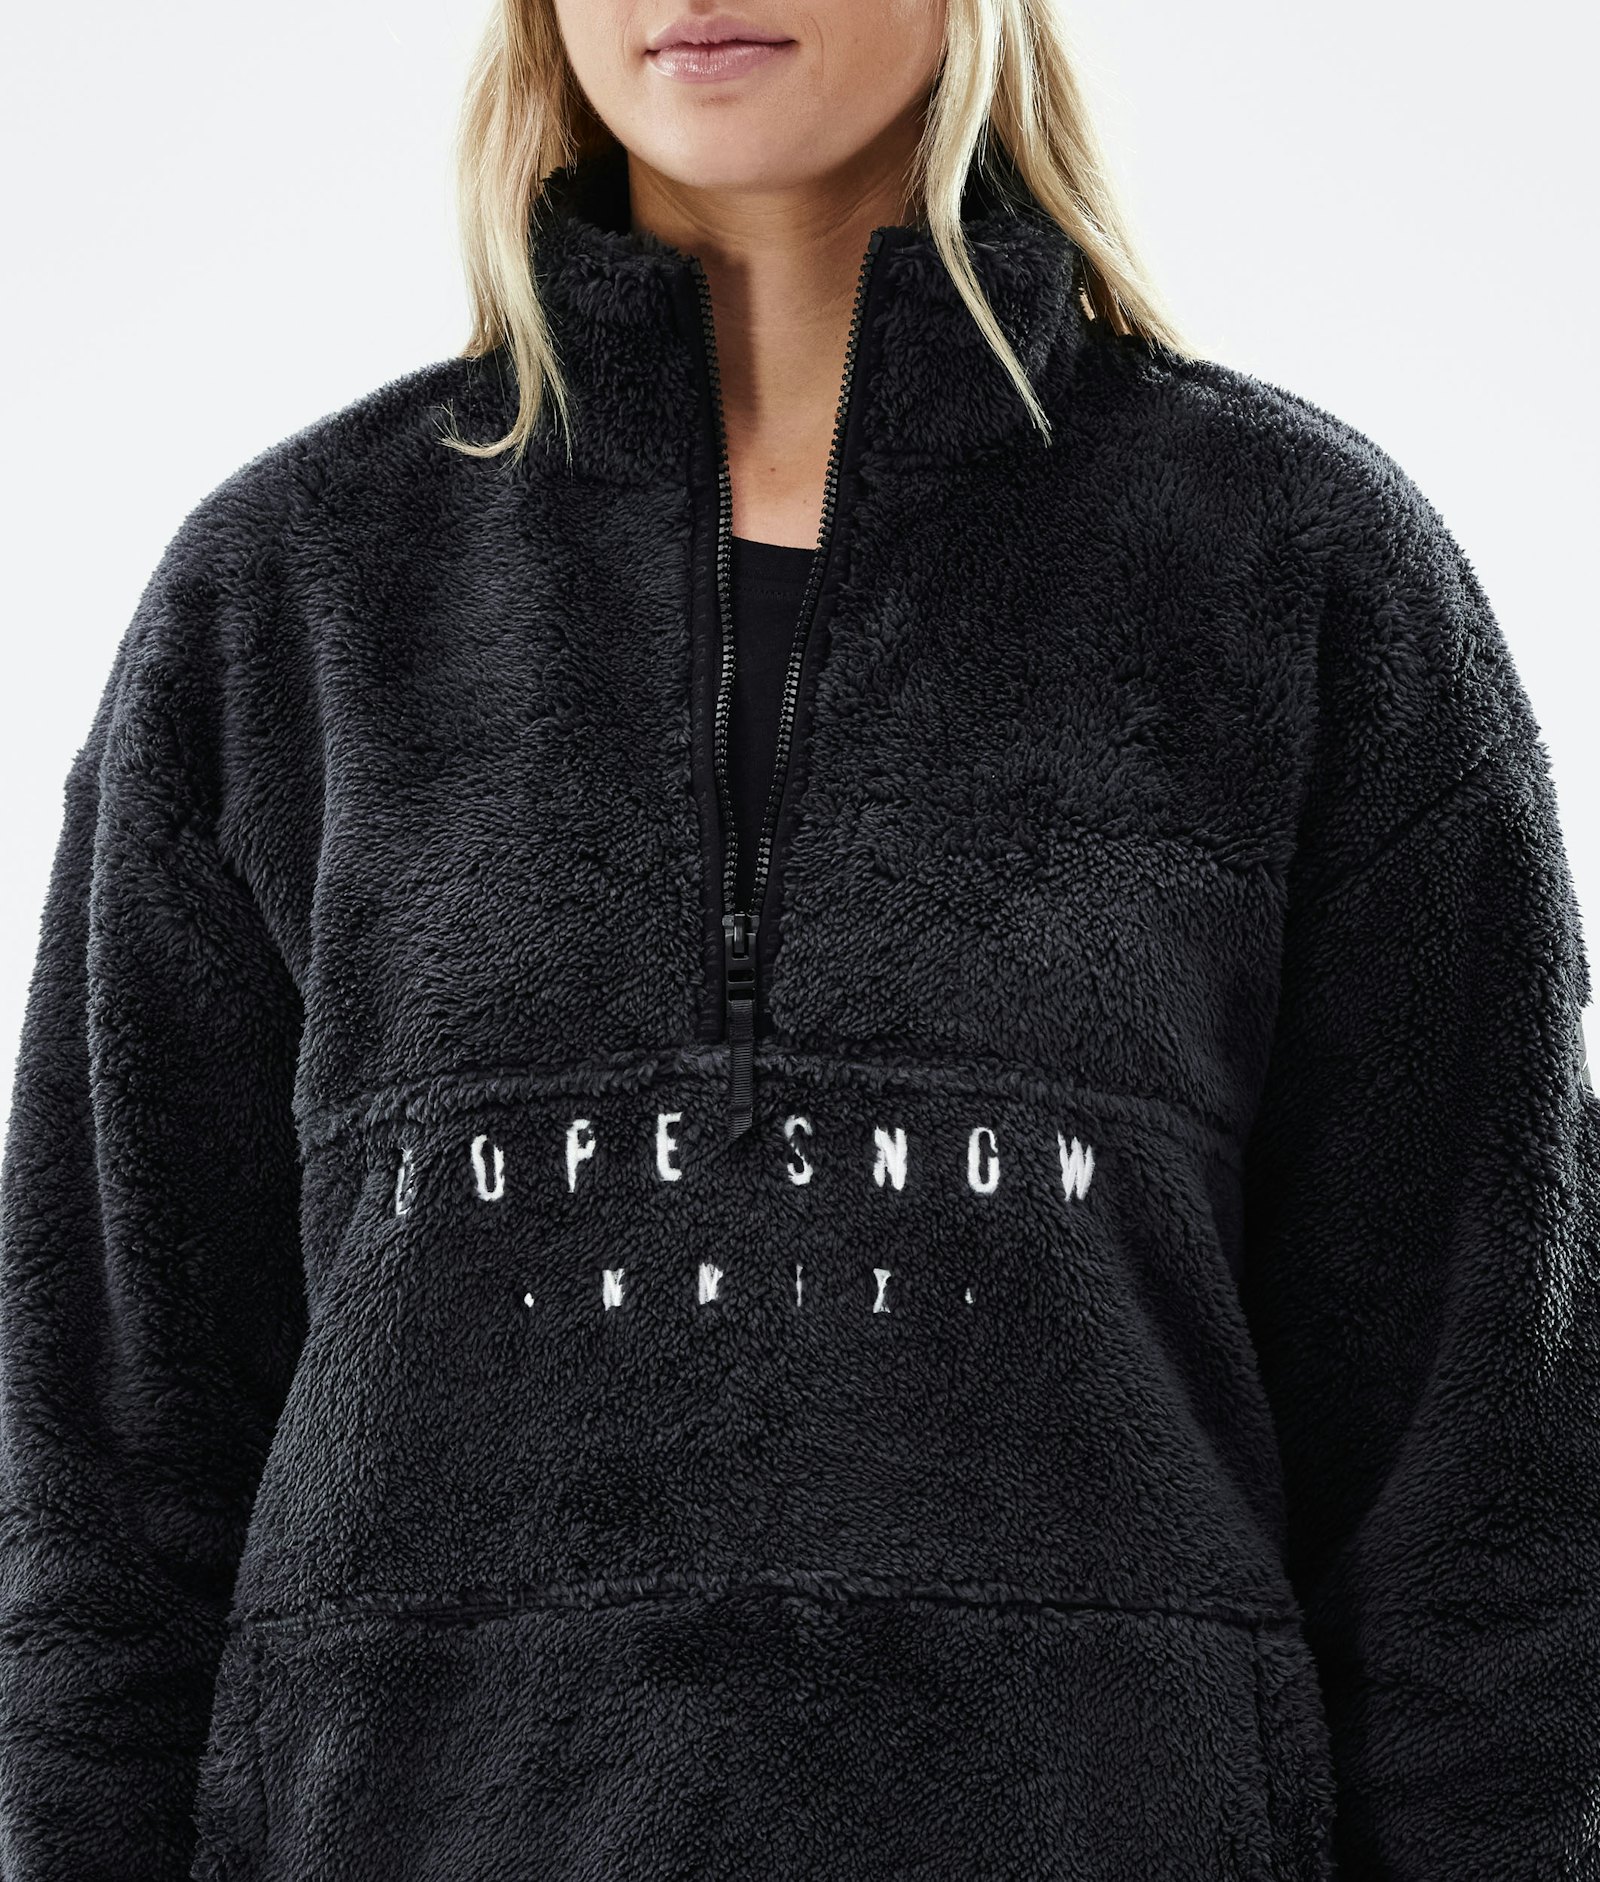 Dope Pile W 2021 Fleece Sweater Women Phantom